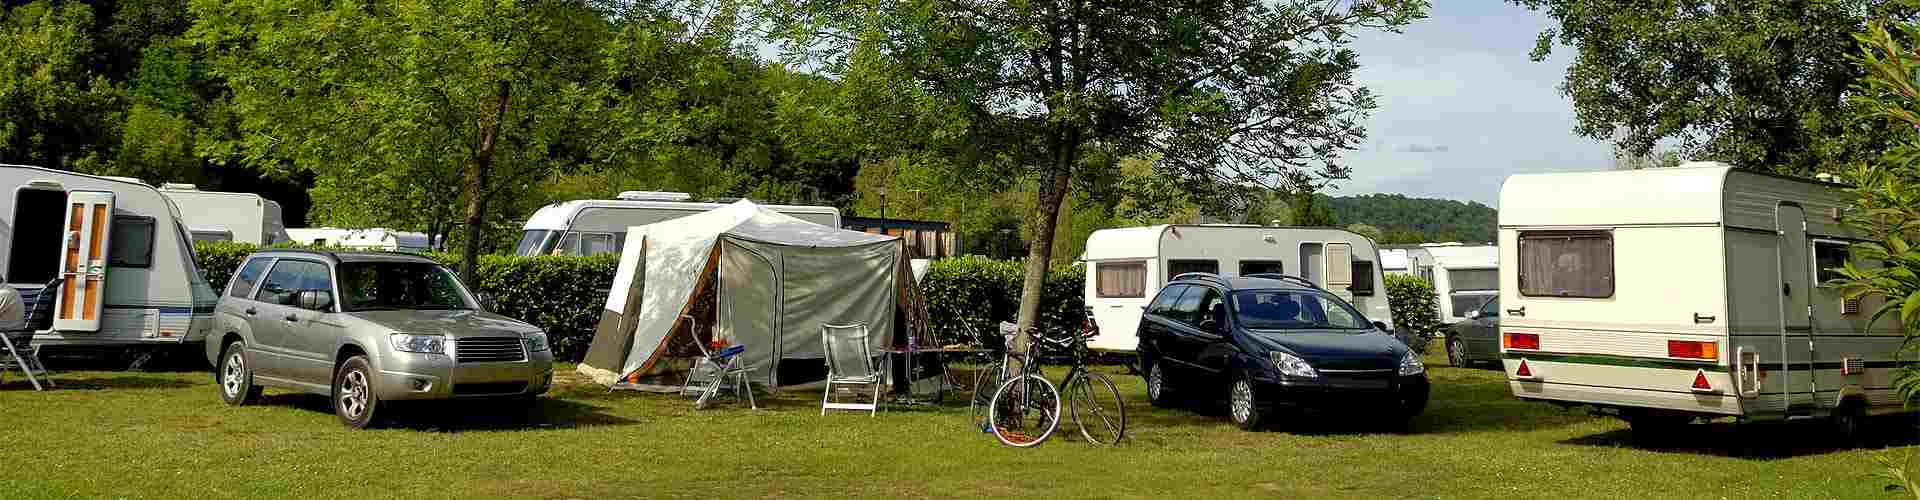 Campings y bungalows en Pandorado